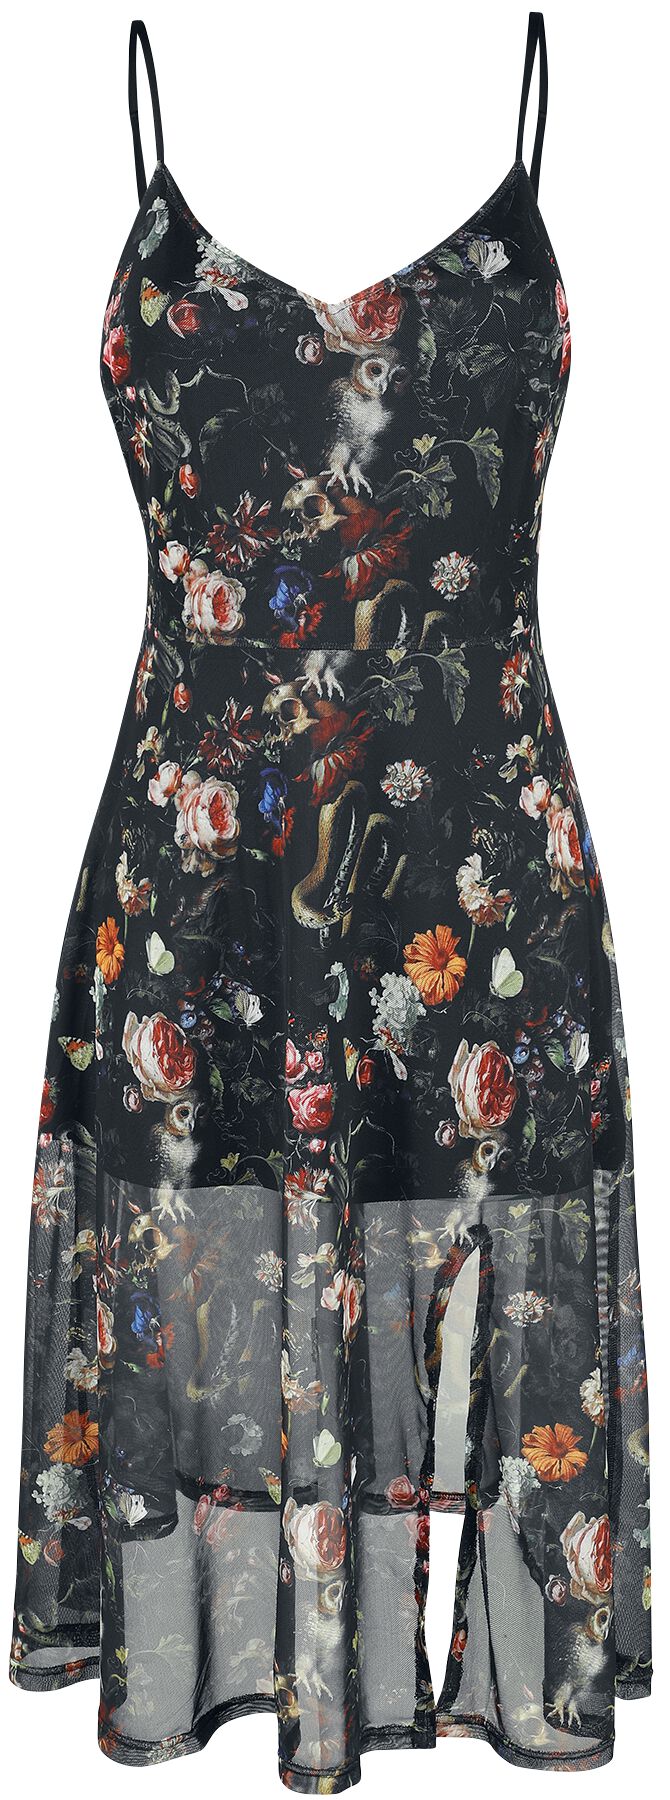 Jawbreaker - Gothic Kleid knielang - Night Garden Print Midi Dress - XS bis 4XL - für Damen - Größe S - multicolor